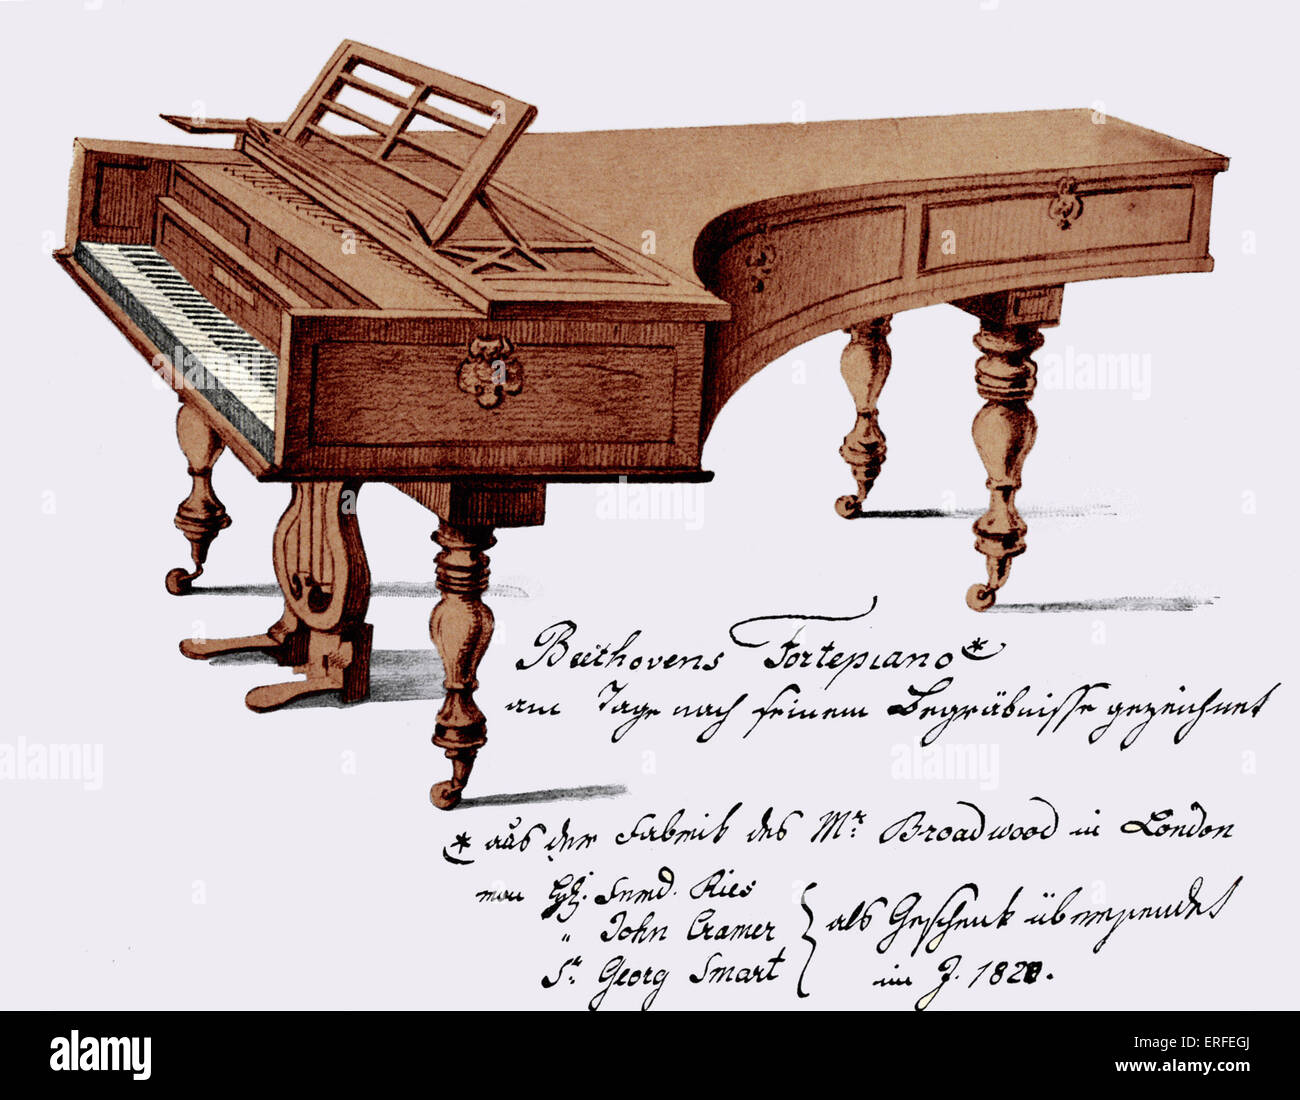 Ludwig van Beethoven's Broadwood piano. Ludwig van Beethoven. German composer, 1770-1827. Stock Photo